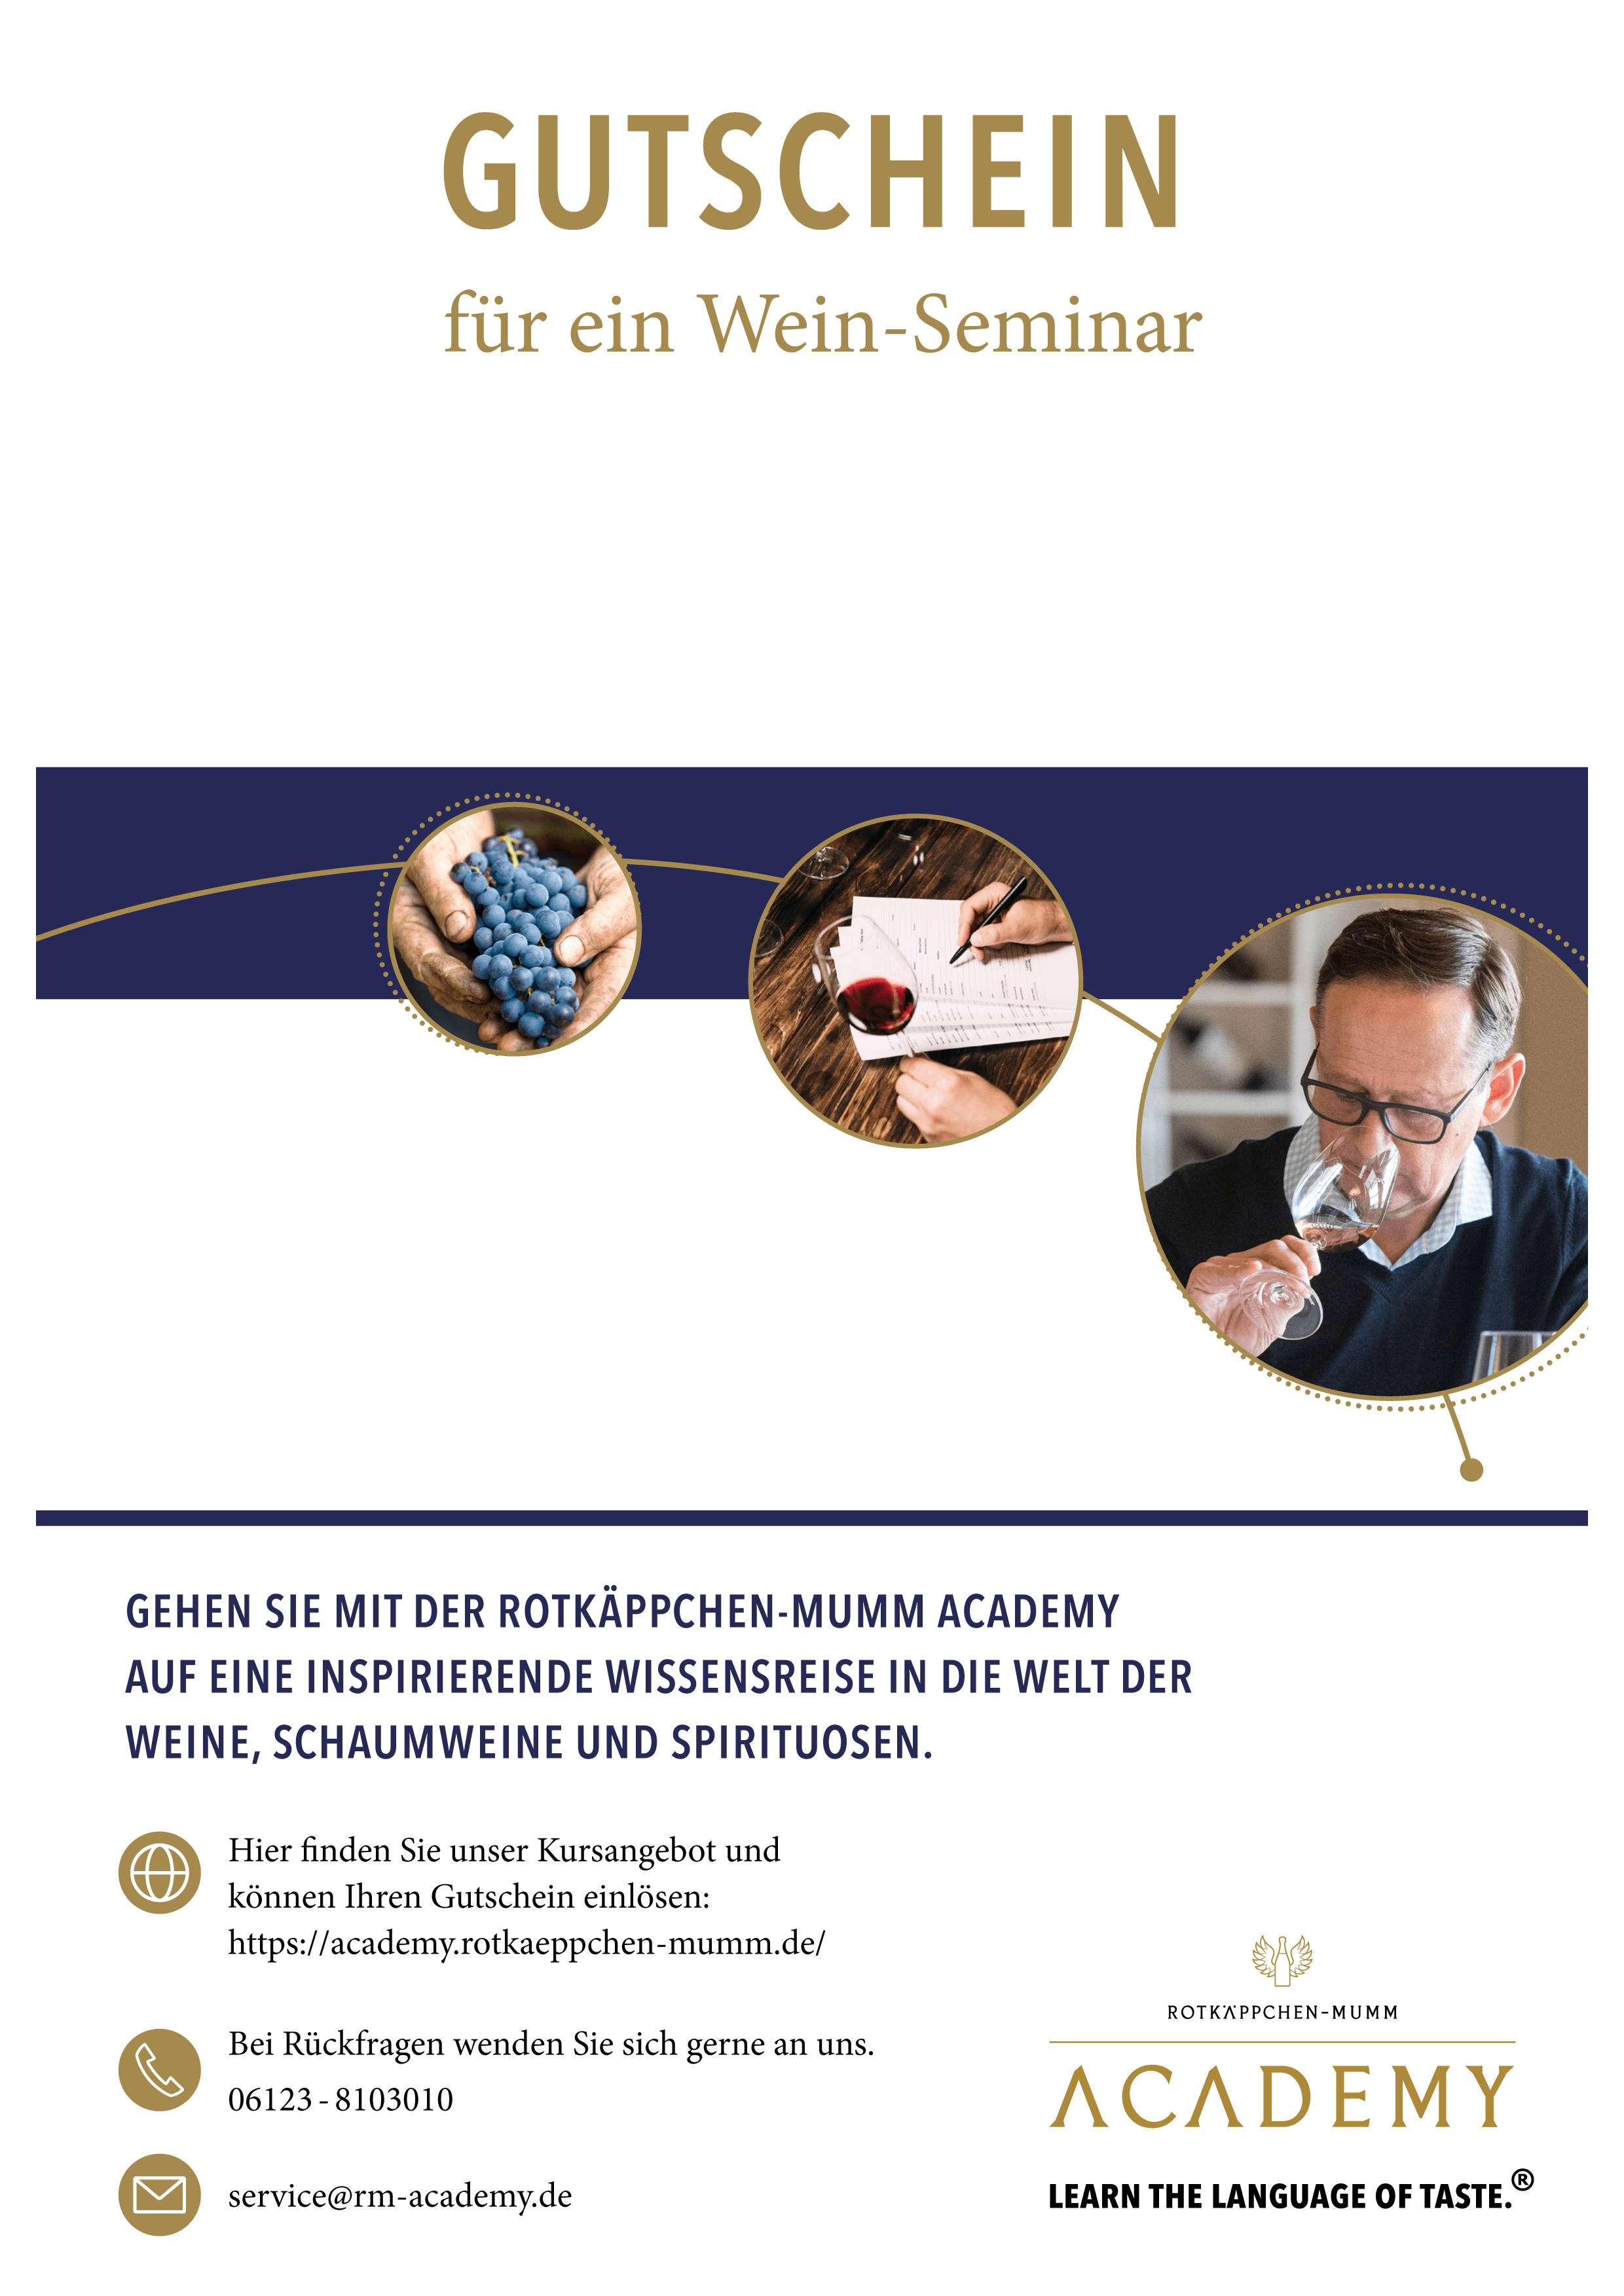 Gutschein Wein-Seminar